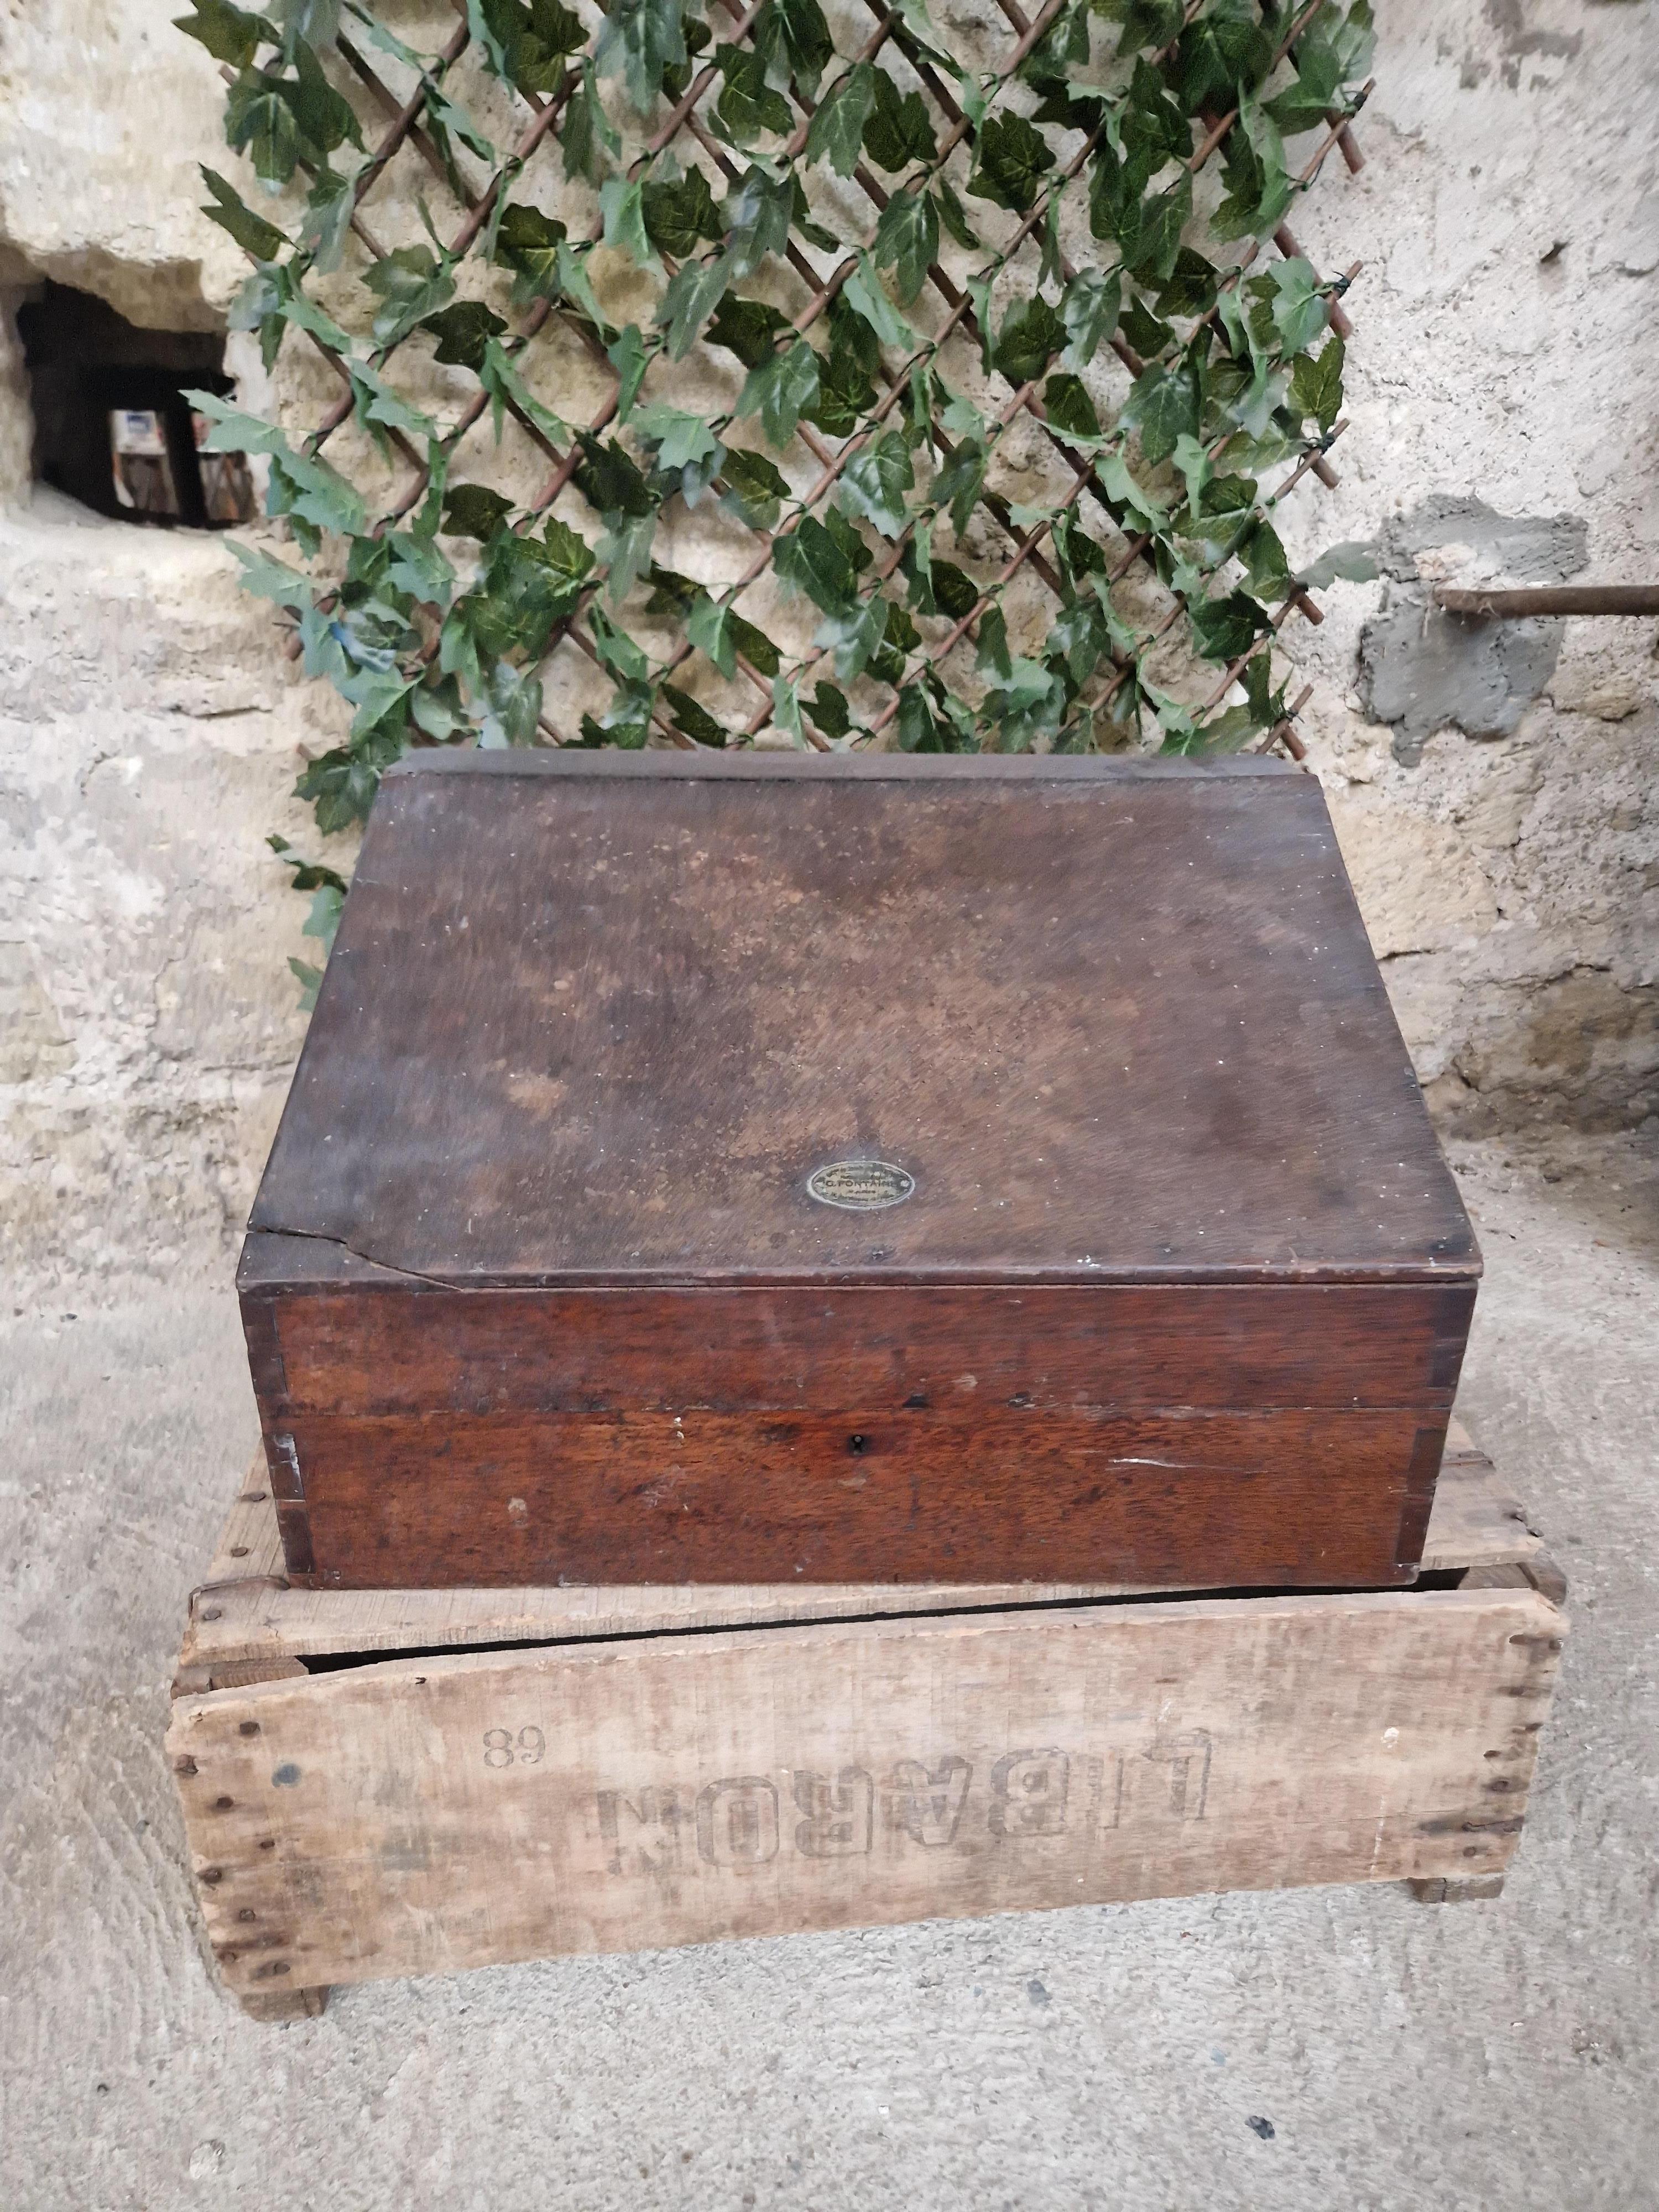 Diese antike französische Apothekerdose ist ein seltener Fund für Sammler von wissenschaftlichen Erinnerungsstücken. Diese Schachtel aus dem 19. Jahrhundert hat ein einzigartiges Design, das sich perfekt für jeden Apotheker oder Chemieliebhaber